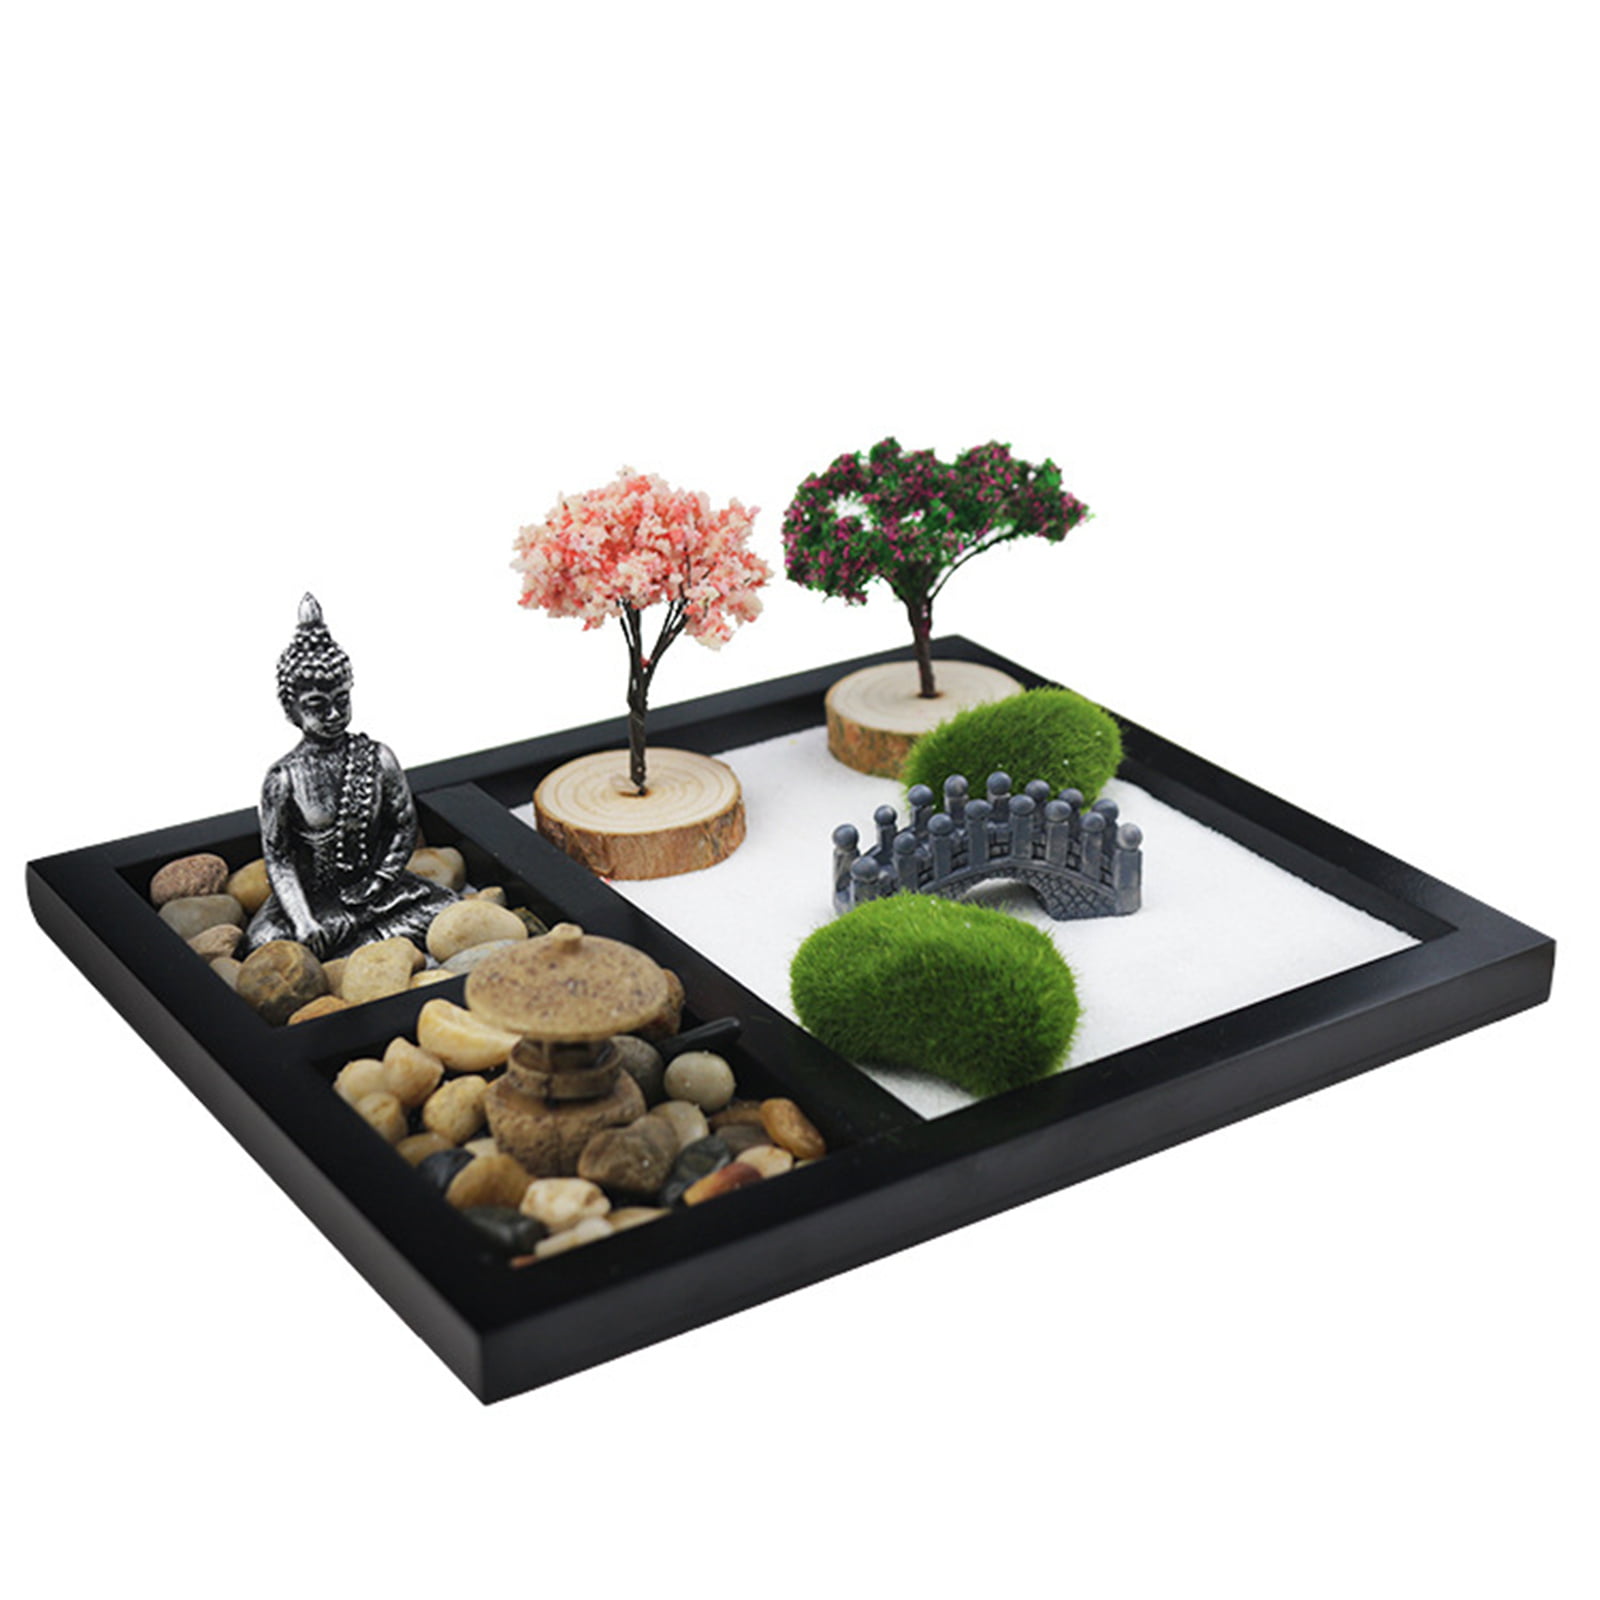 Desktop Tranquility Mini Japanese Zen Garden Kit for Home or Office Desk |  Office Decor Zen Garden Kit Improves Meditation | Includes Sand Tray